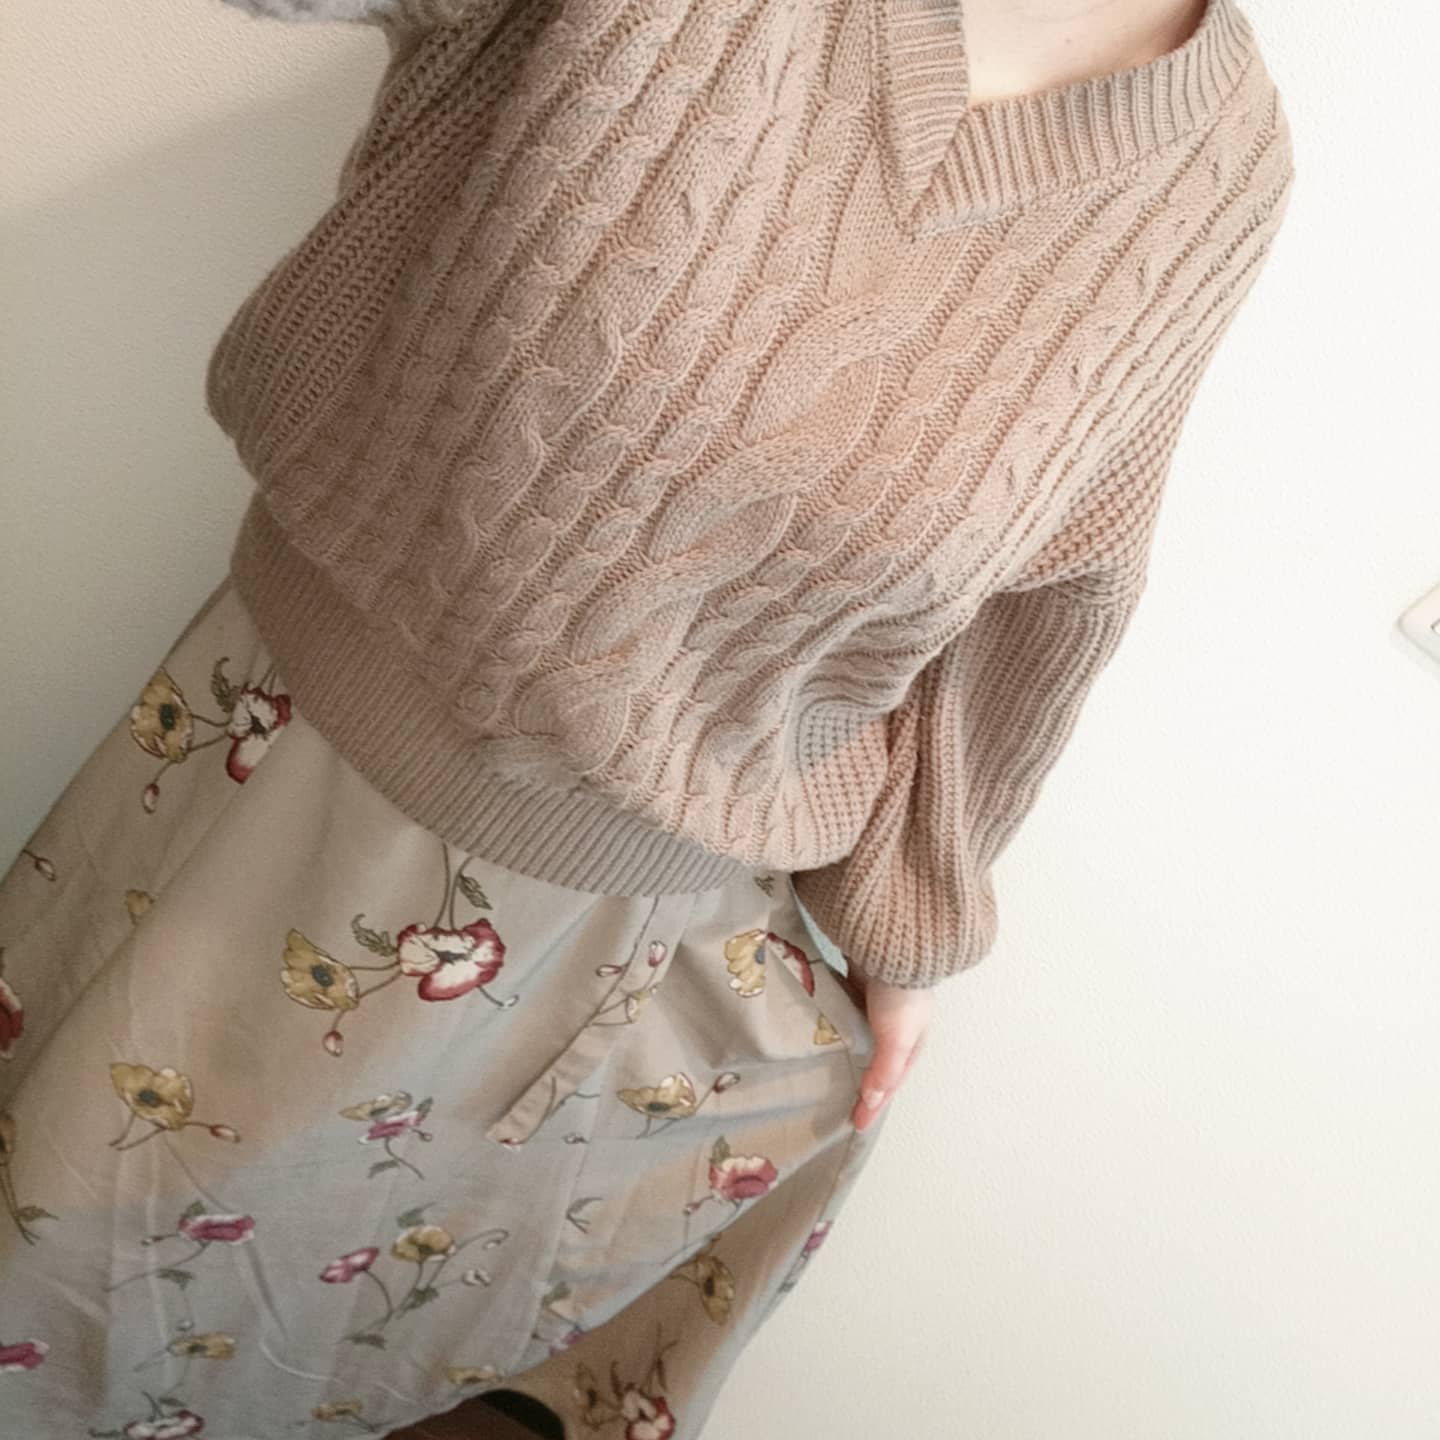 外出自粛の引きこもりコーデw·昼過ぎまでパジャマでいた·引きこもってても、ちゃんと着替えよう‪wと思い…·#楽チンコーデ 。·この花柄スカート本当着やすい·別な花柄スカートもGRLで予約したから、届くの楽しみ〜·ゴールデンウィークまで緊急事態宣言になったら出かけられないけどね…··#ワントーンコーデ #ブラウンコーデ #外出自粛中 #春コーデ #grlコーデ #クレイル【Instagram】